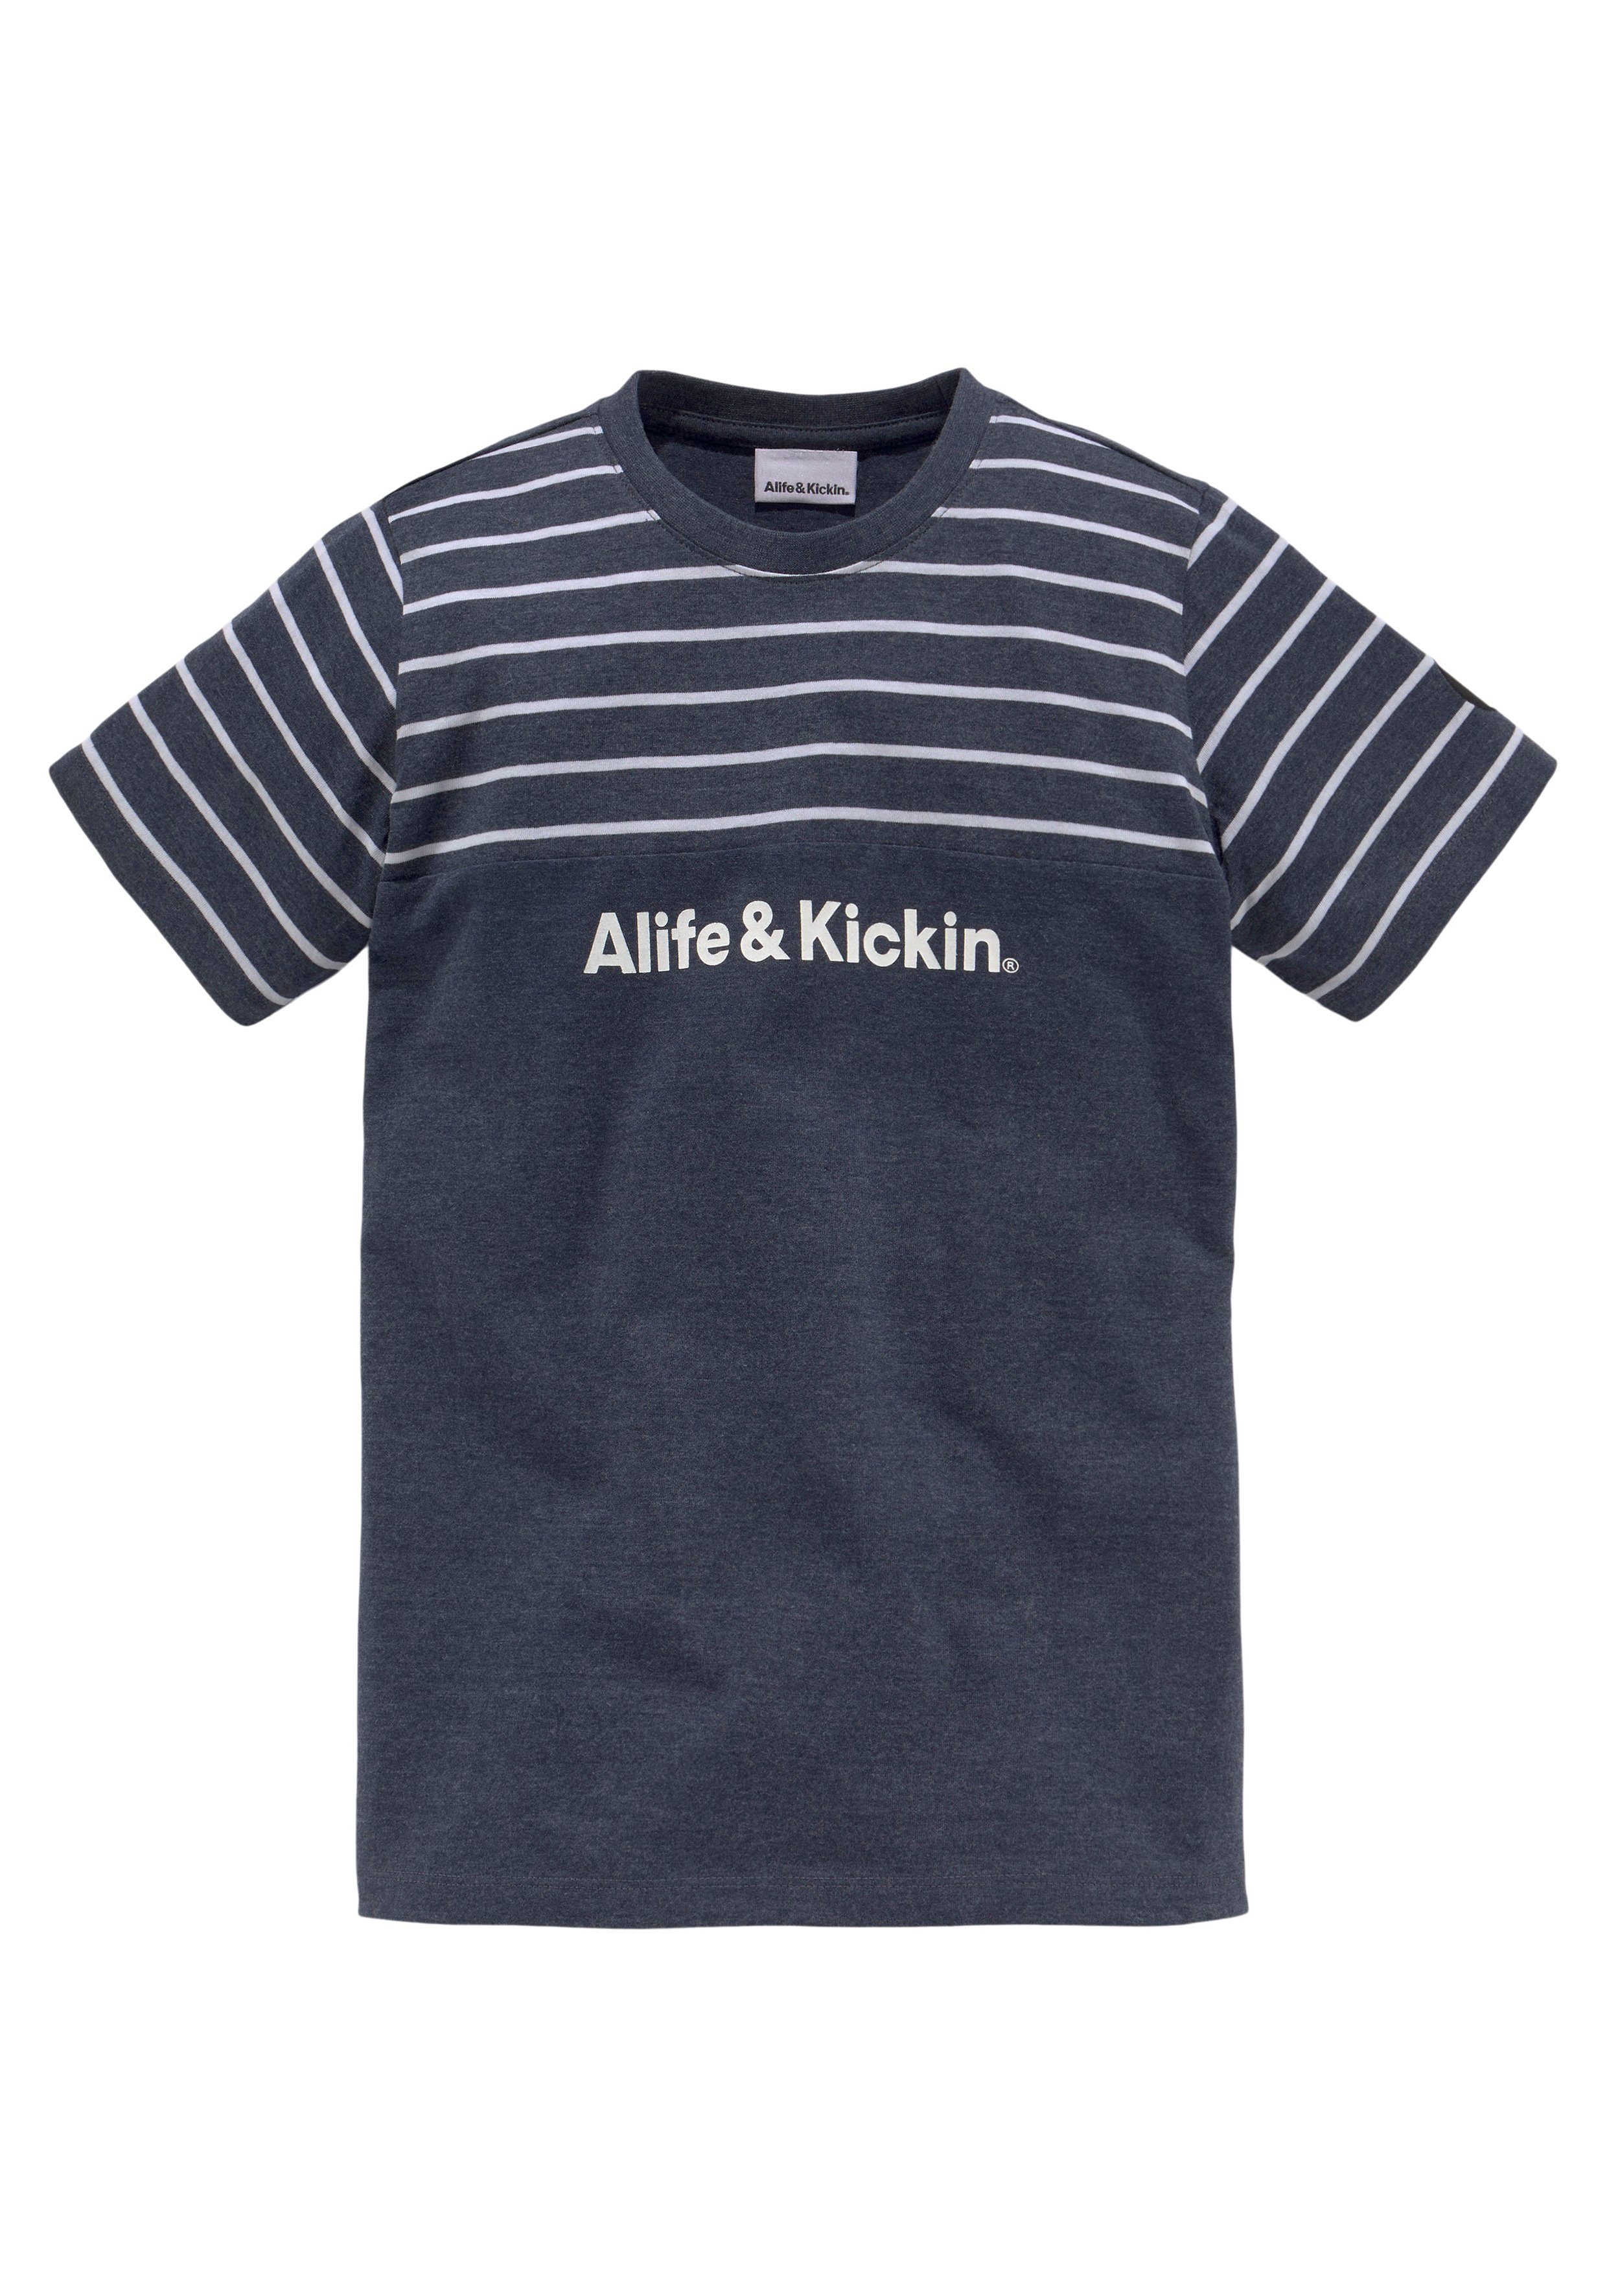 & und Qualität Colorblocking Kickin melierter Alife Ringel, T-Shirt MARKE! garngefärbten in NEUE